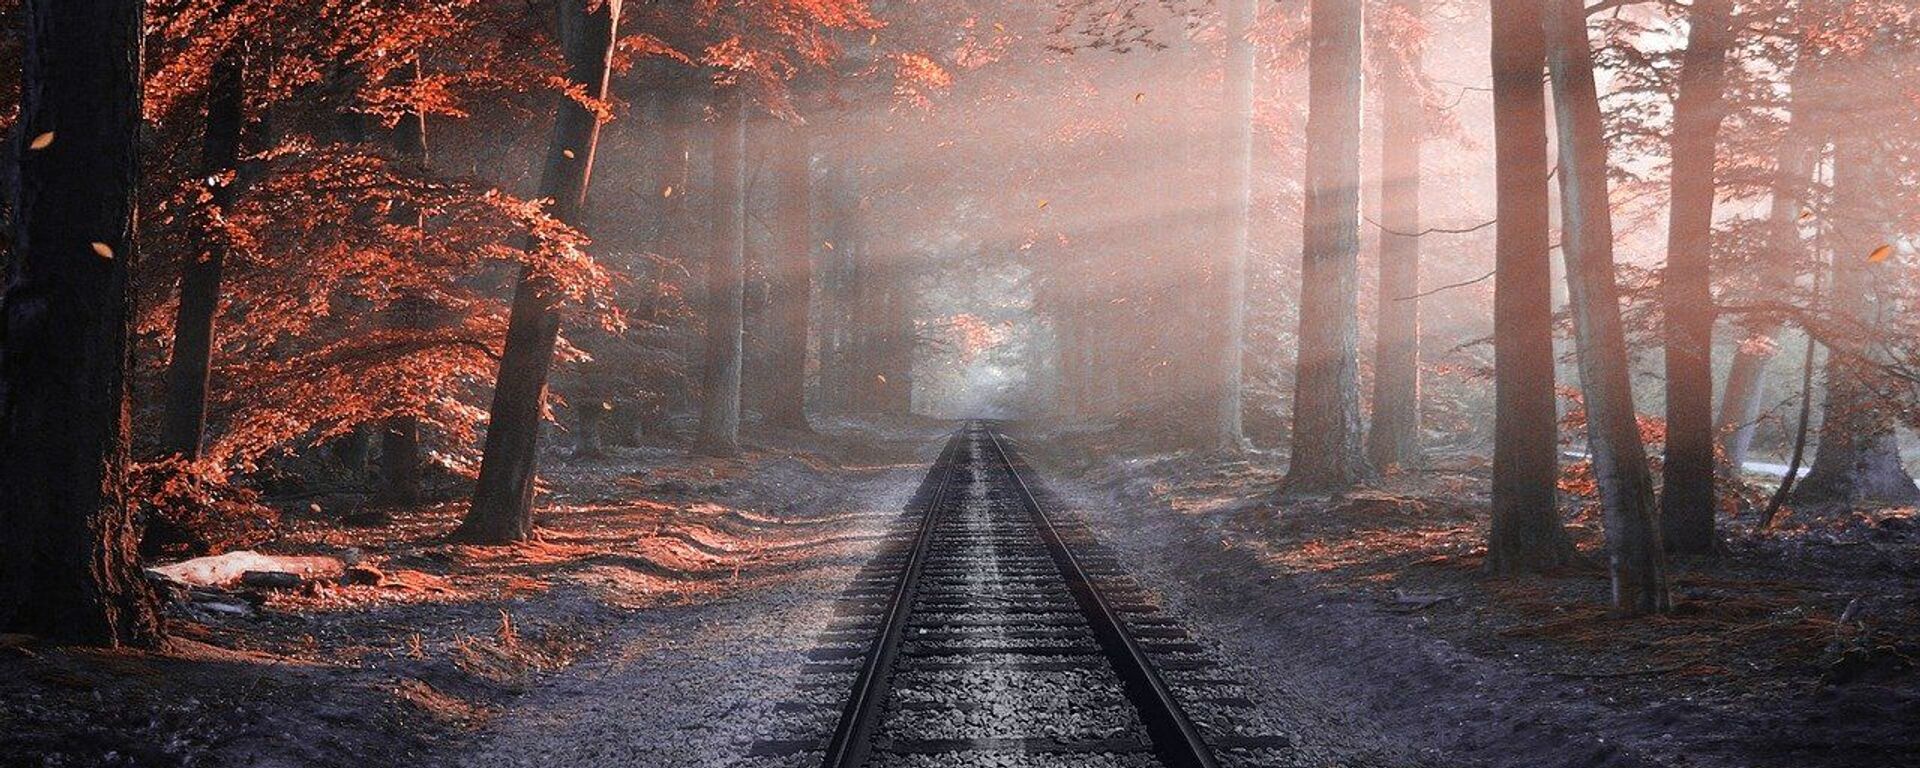 Железная дорога в лесу, архивное фото - Sputnik Литва, 1920, 20.10.2021